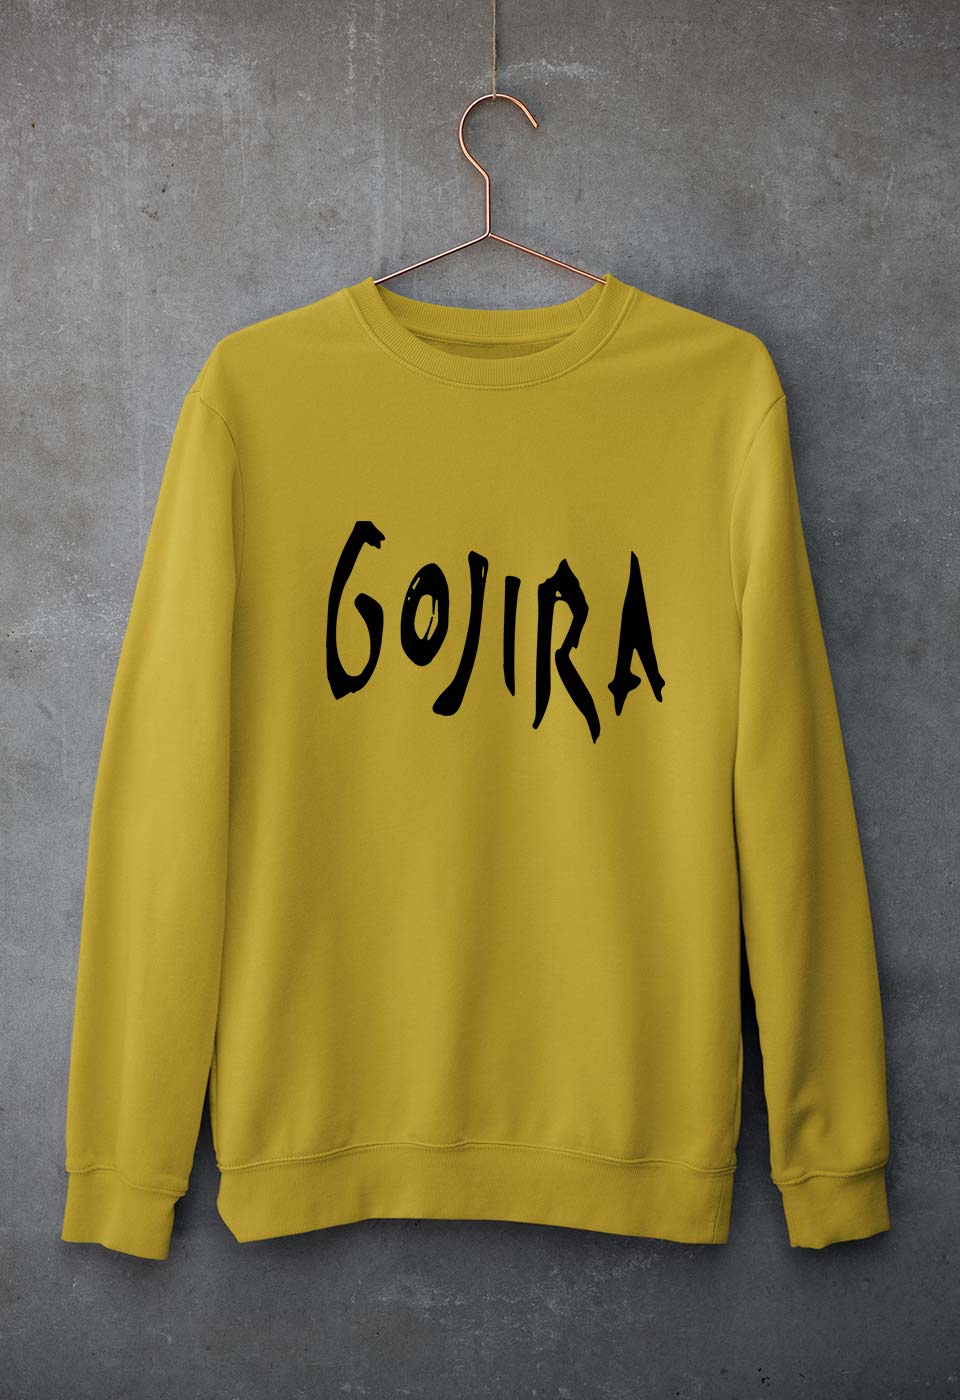 Gojira Unisex Sweatshirt for Men/Women-S(40 Inches)-Mustard Yellow-Ektarfa.online